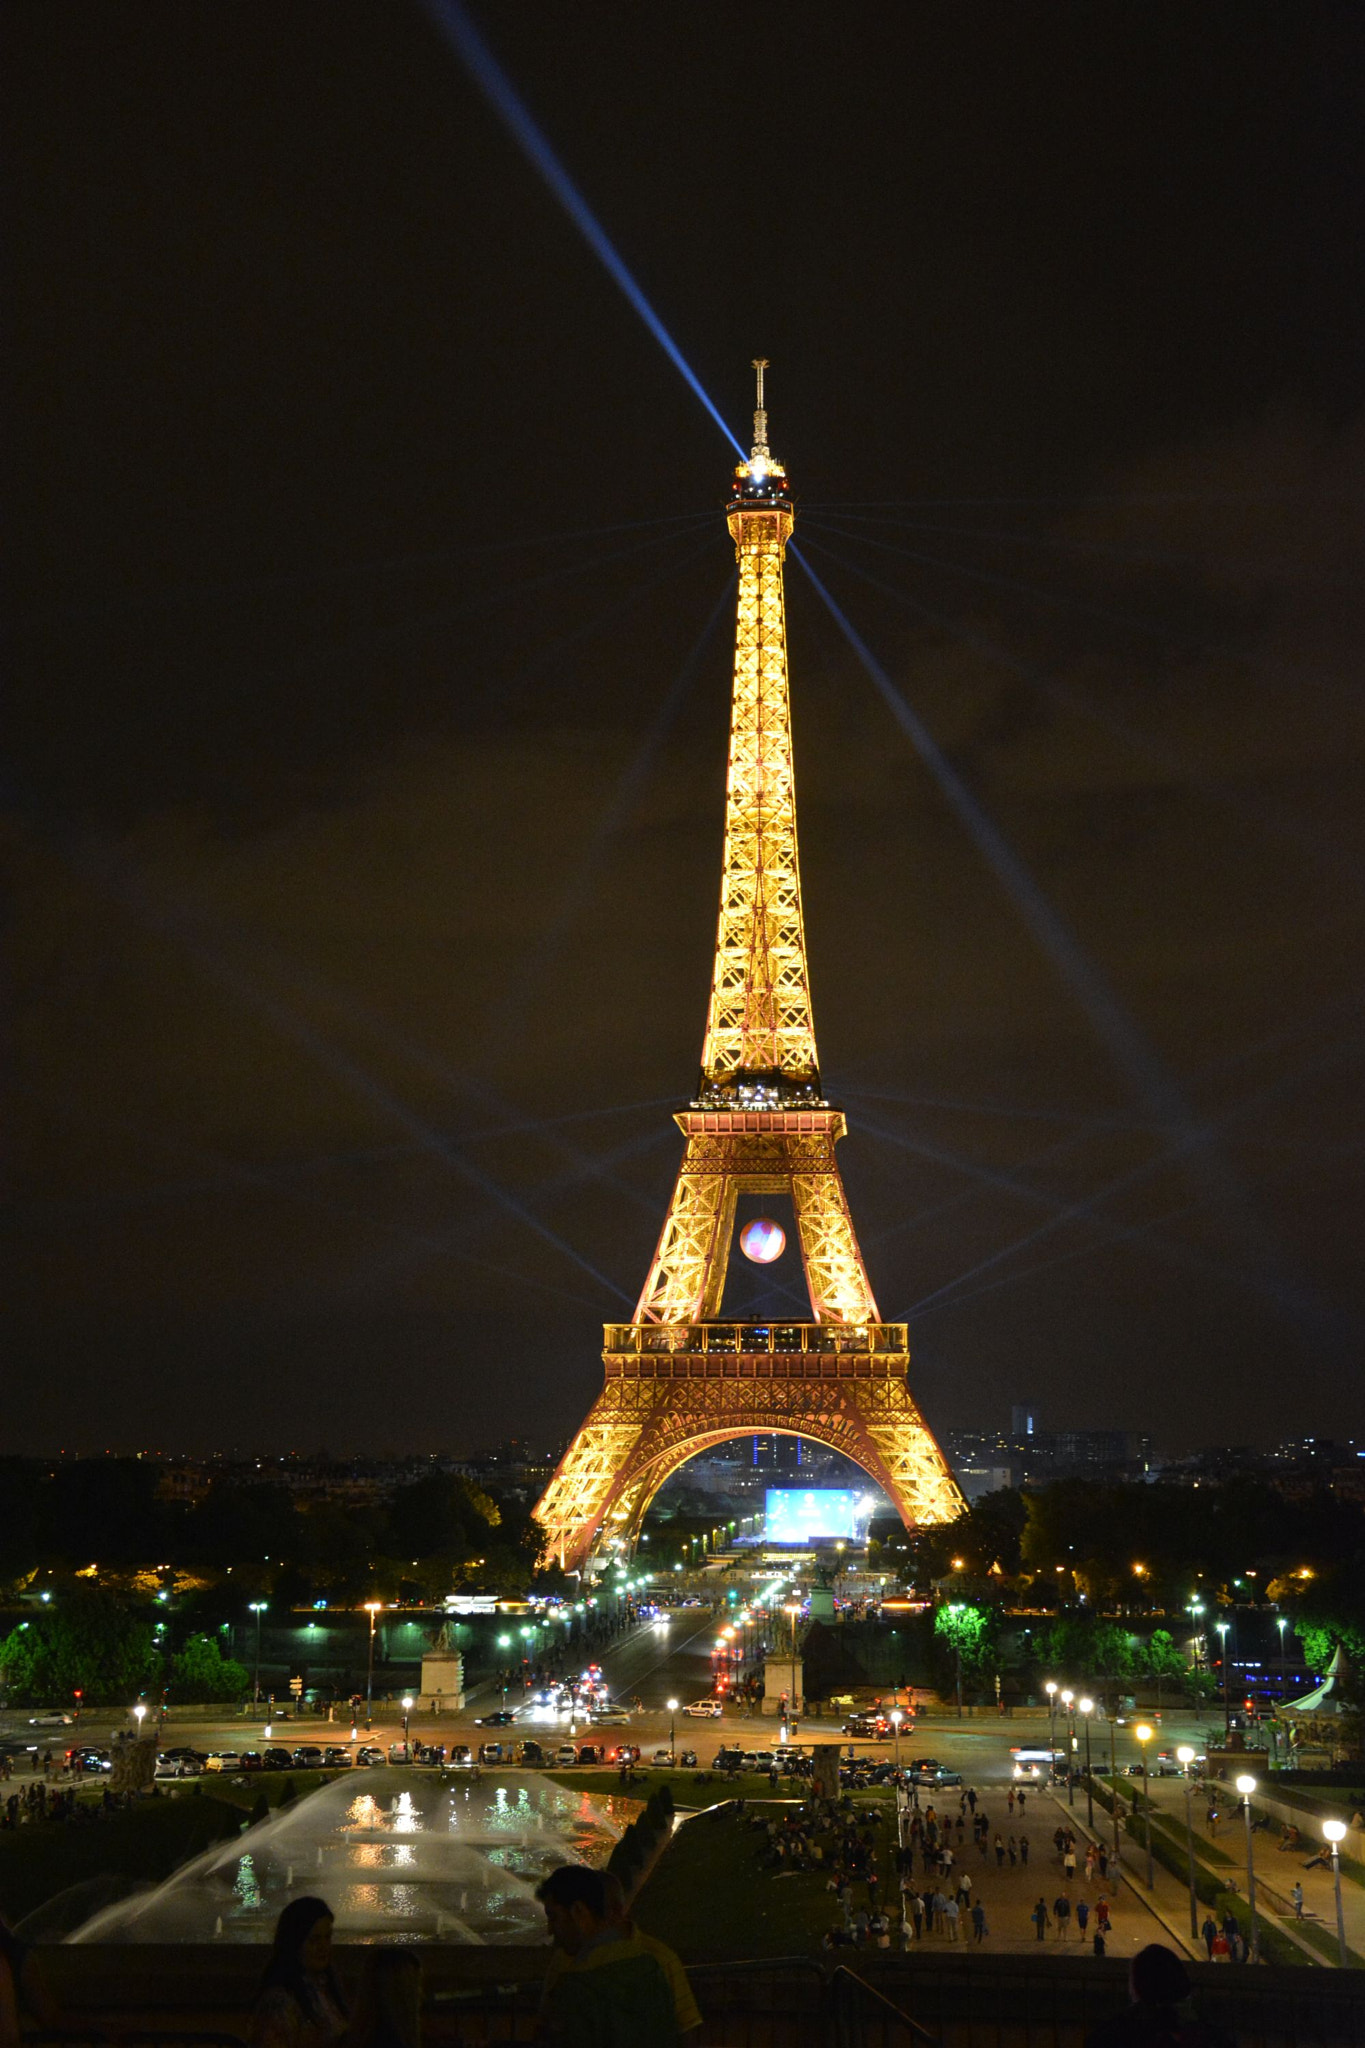 Nikon D5200 sample photo. Paris at night photography